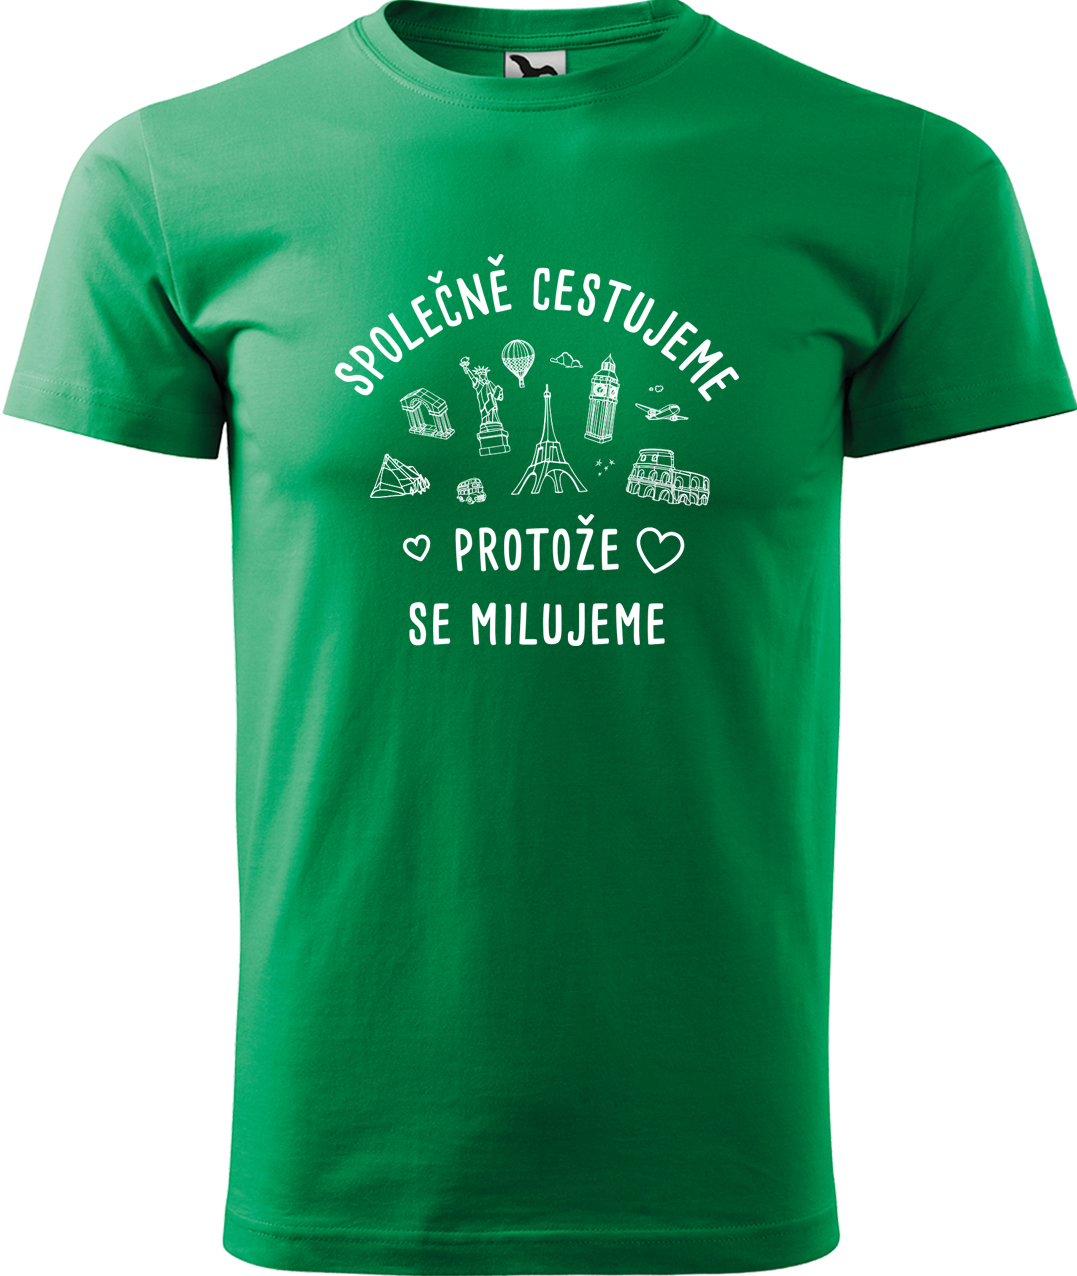 Pánské cestovatelské tričko - Společně cestujeme protože se milujeme Velikost: M, Barva: Středně zelená (16), Střih: pánský